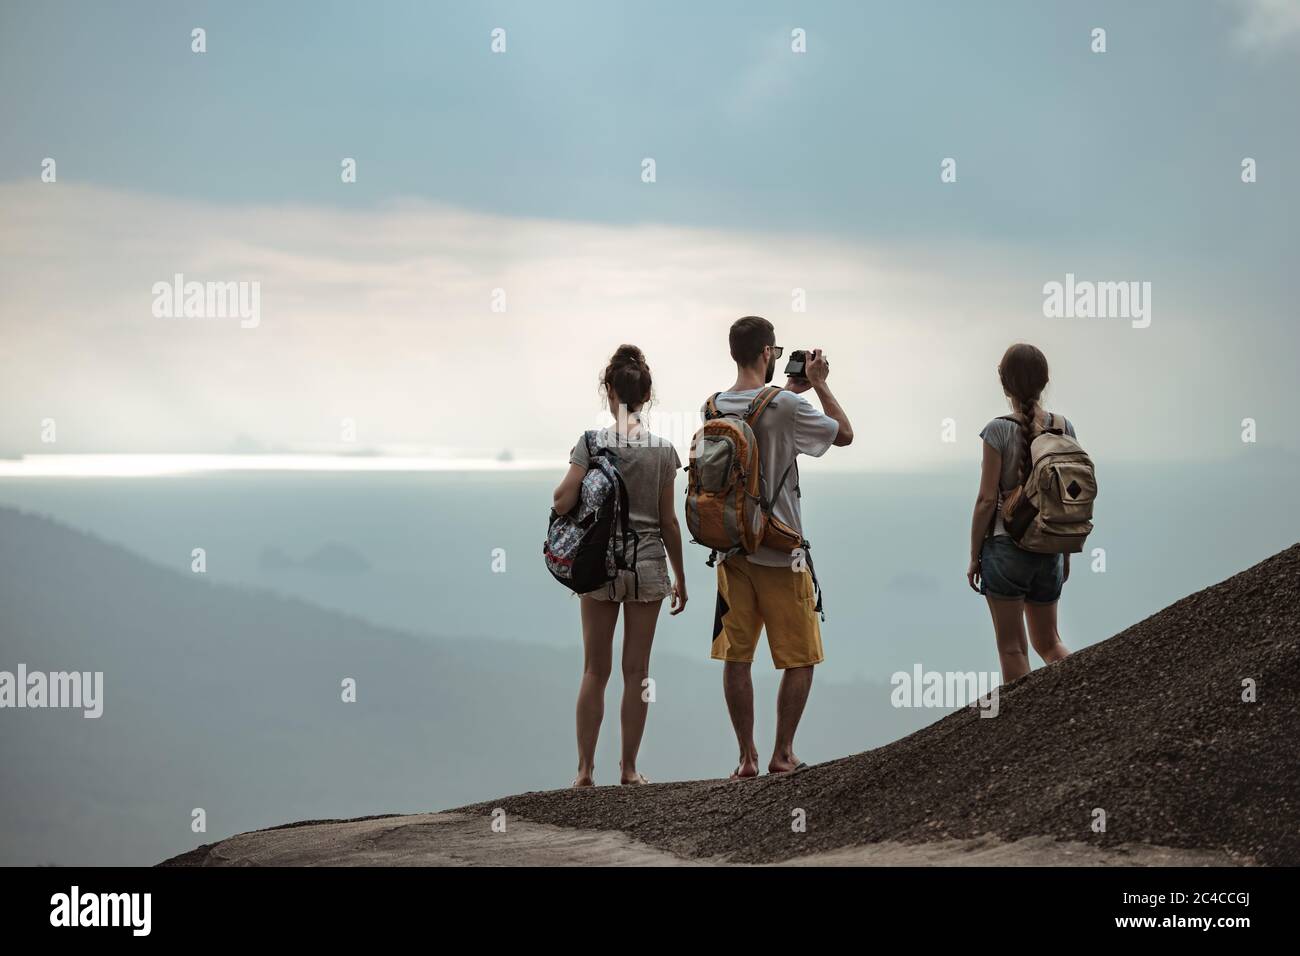 Drei junge Touristen entspannen und genießen am Meer Aussichtspunkt Stockfoto